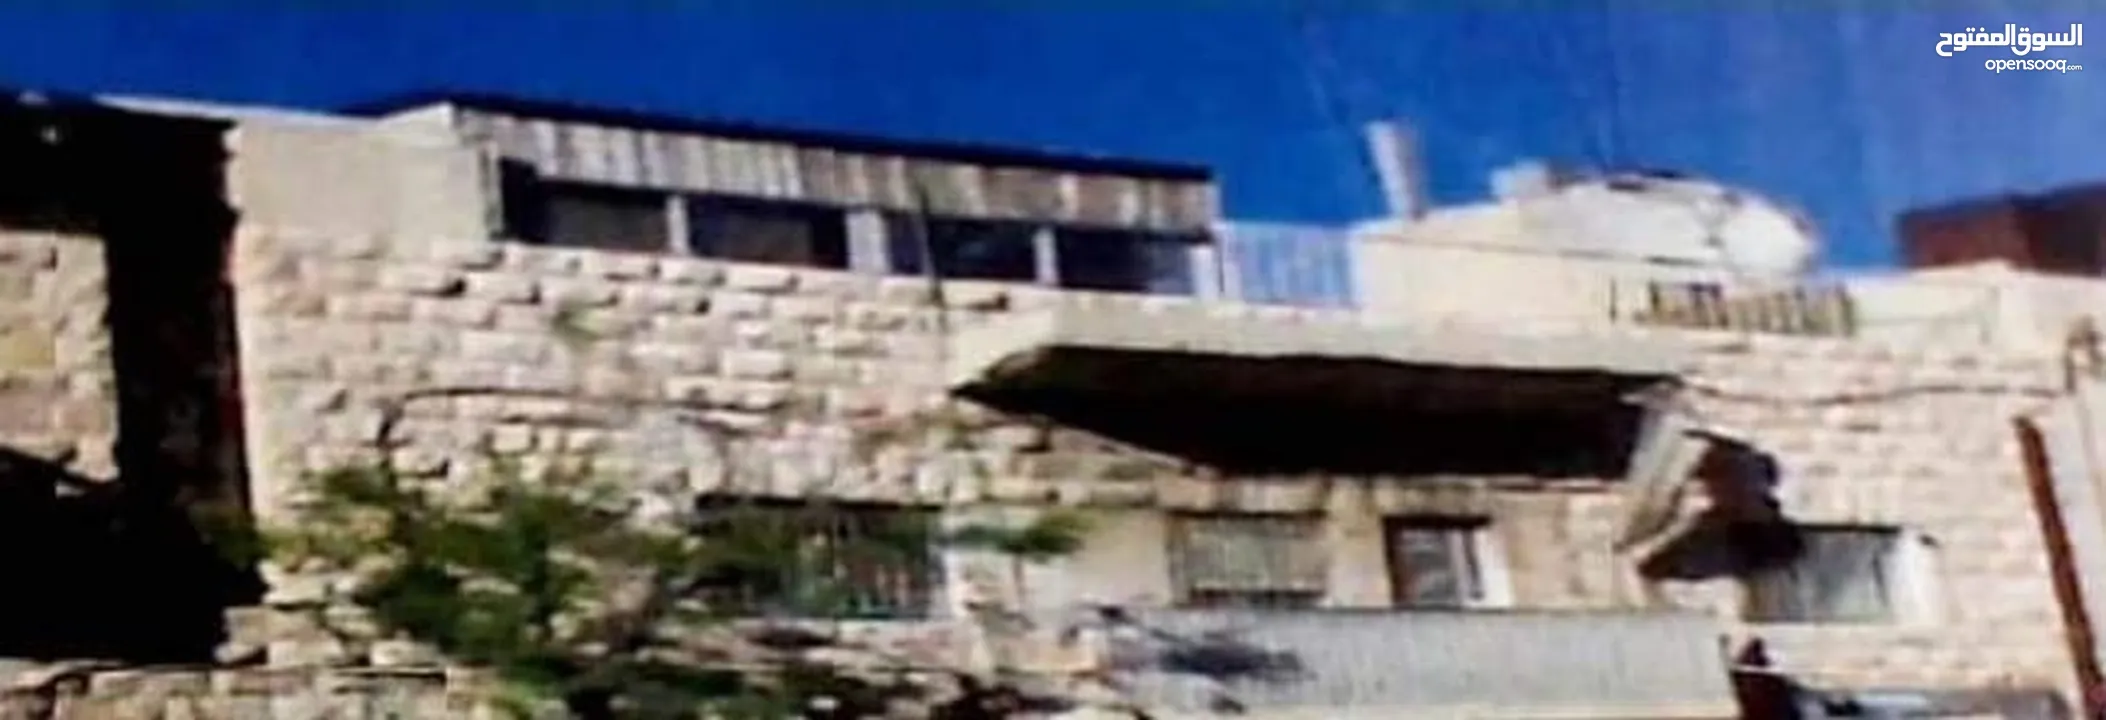 عمارة تجاري و سكني للبيع في منطقة جبل الحسين